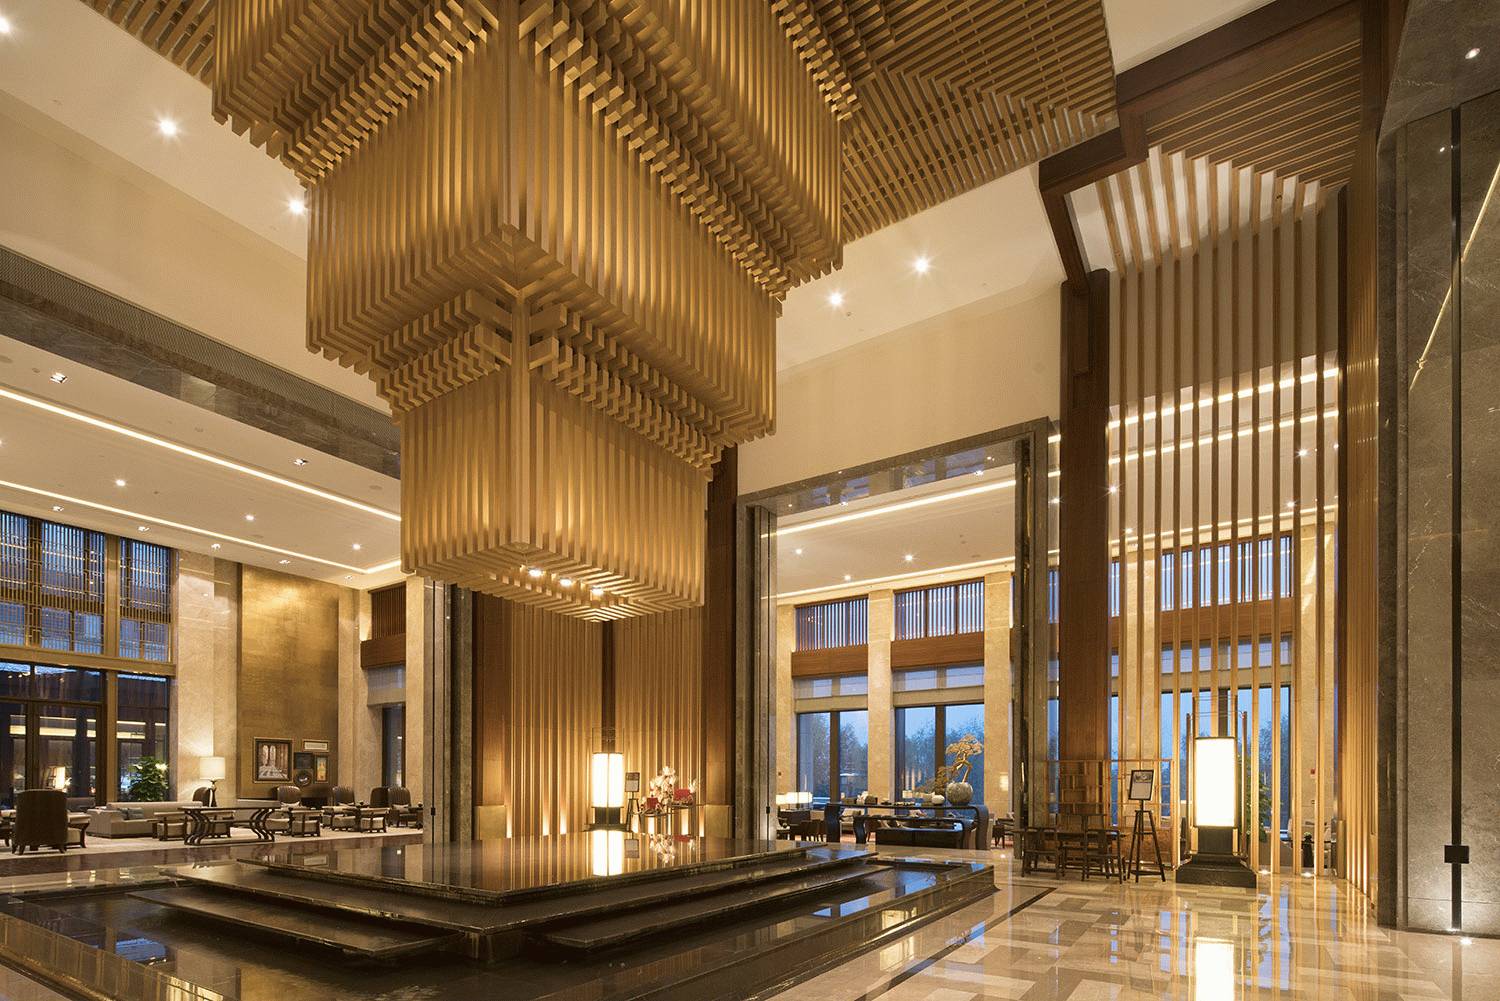 西安凯悦酒店/用设计向世人展现十三朝古都的魅力